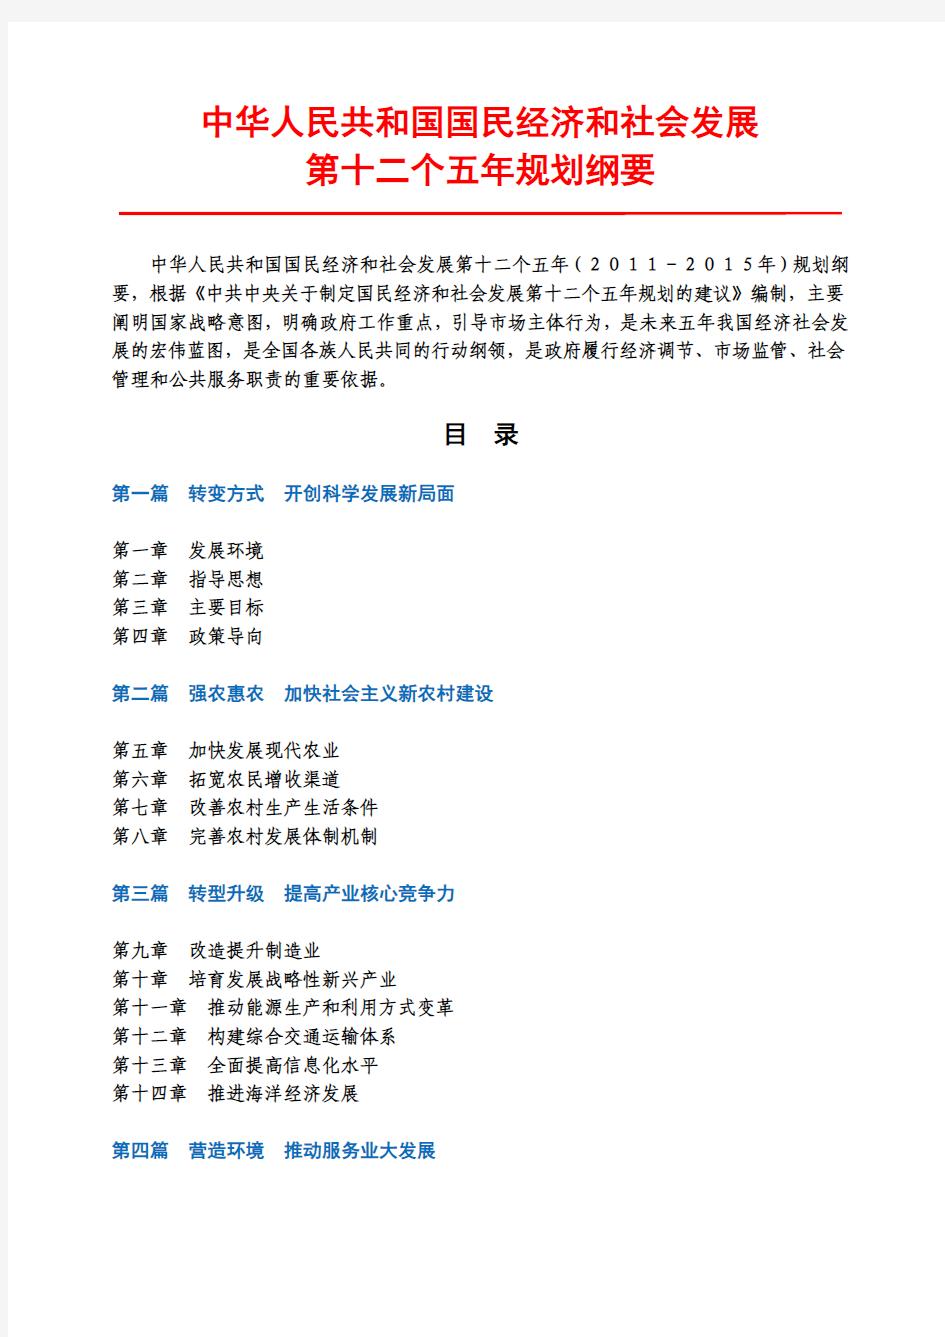 国务院文件：中华人民共和国国民经济和社会发展第十二个五年规划纲要 (全文)